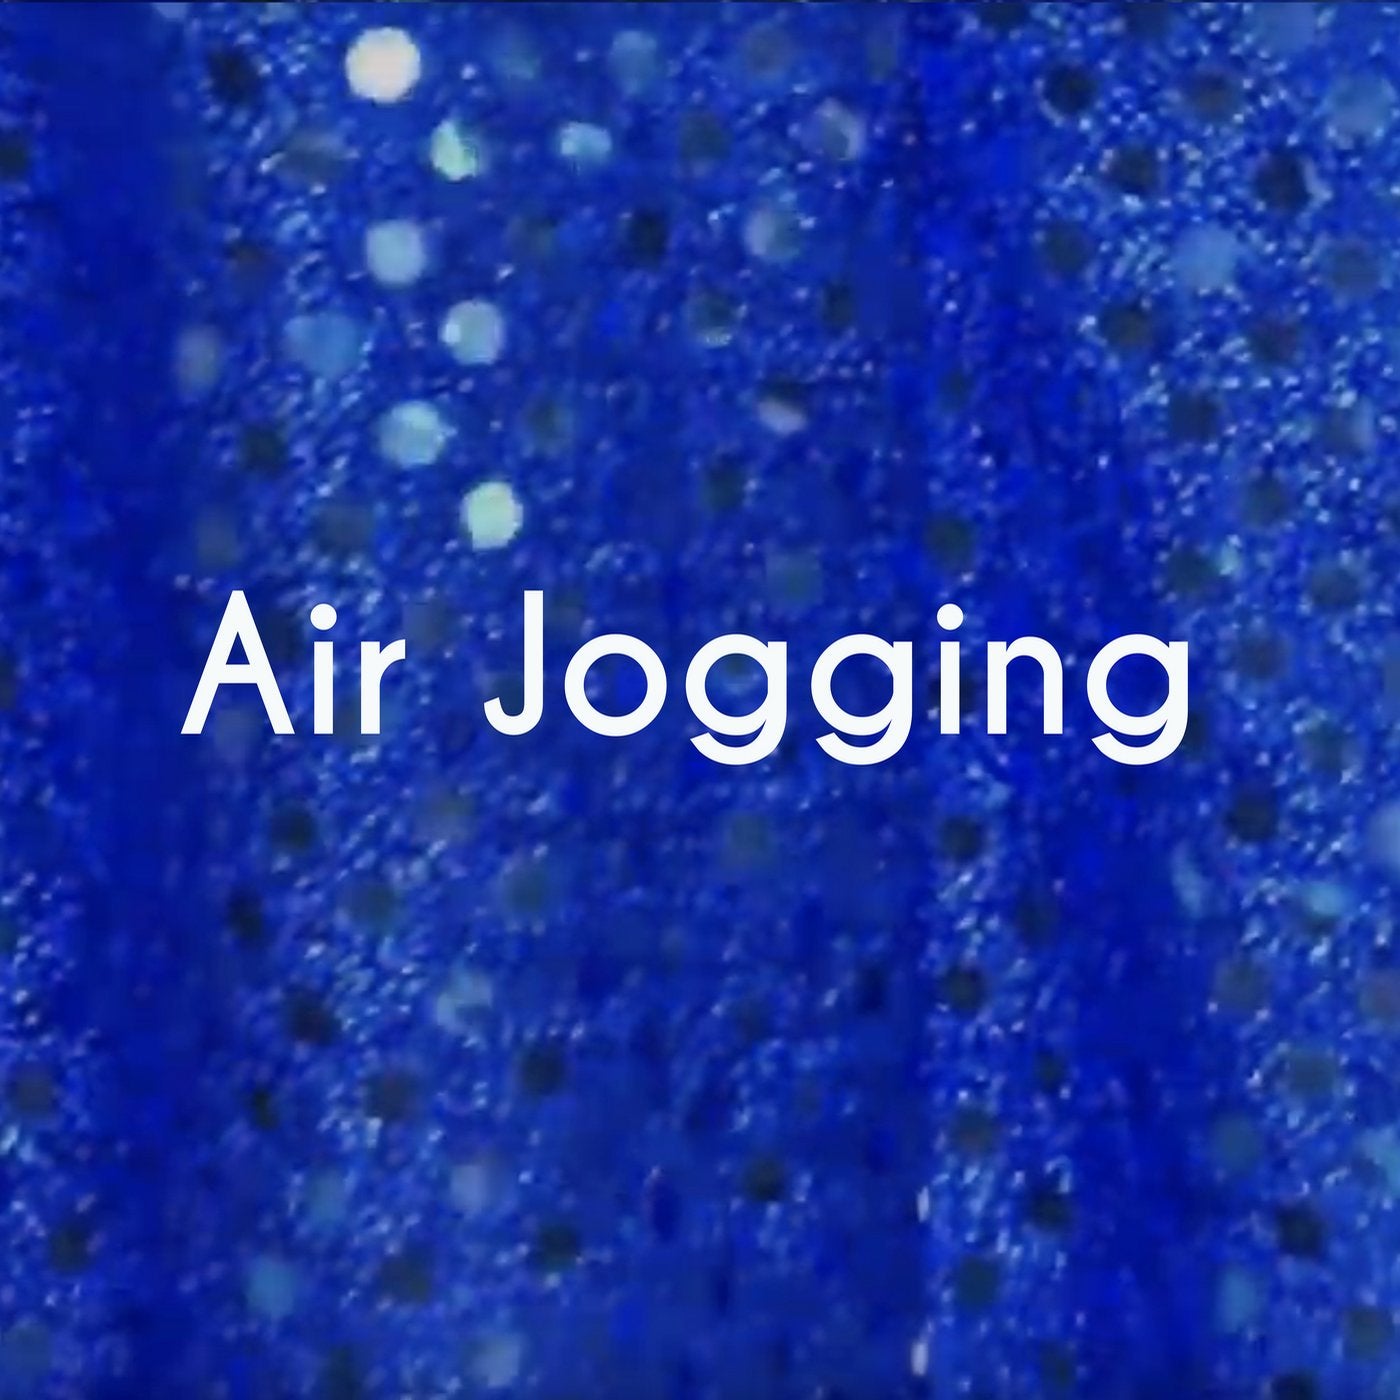 Air Jogging